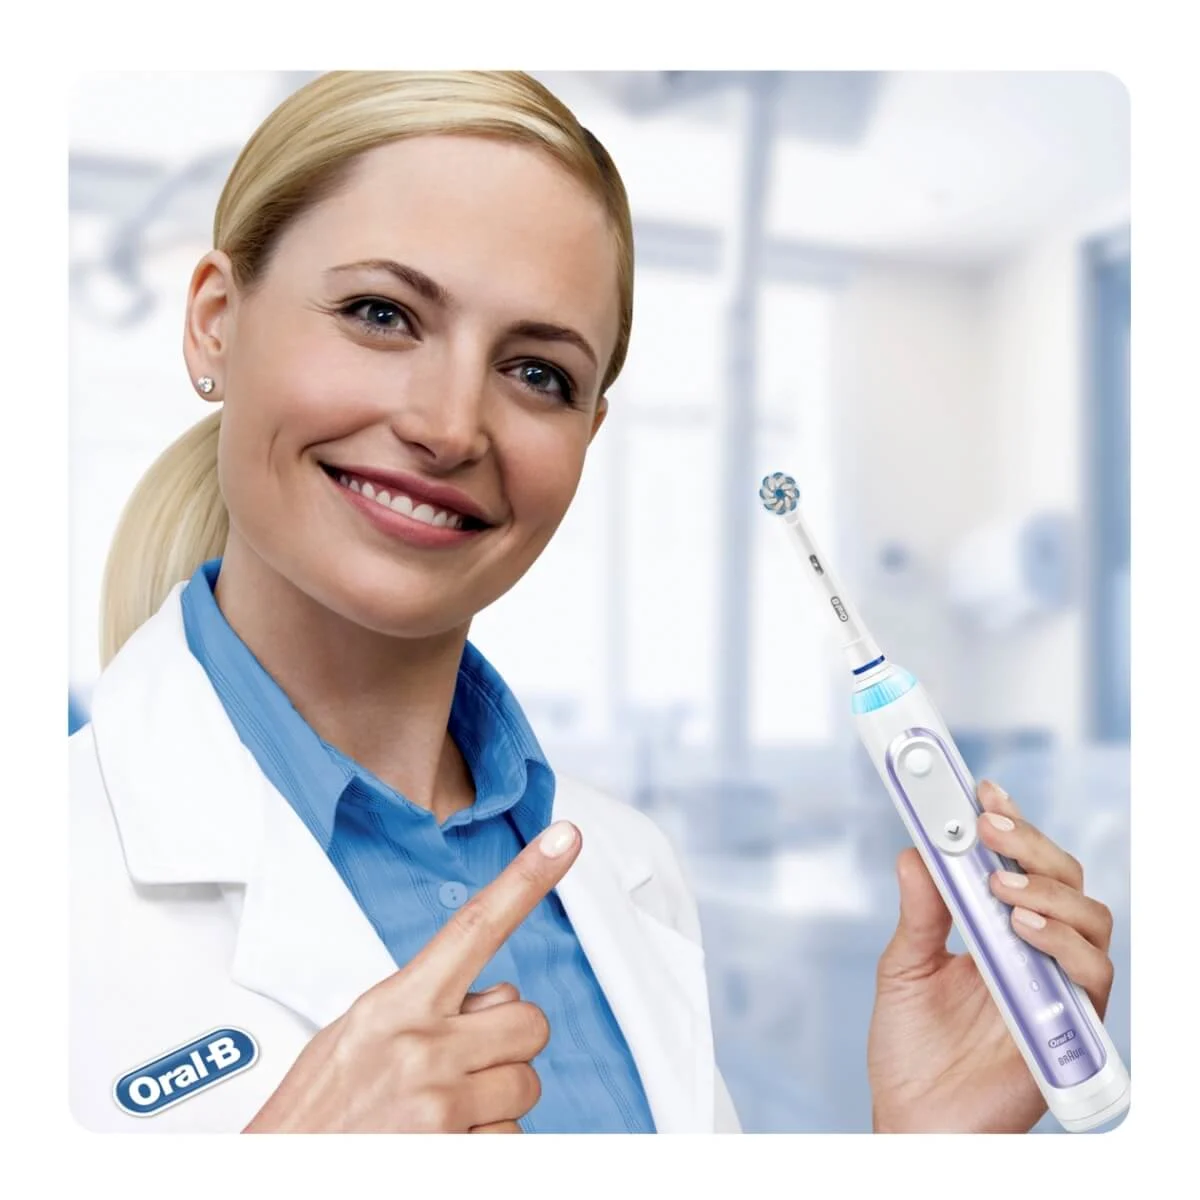 Oral-B Genius Elektrische Tandenborstel